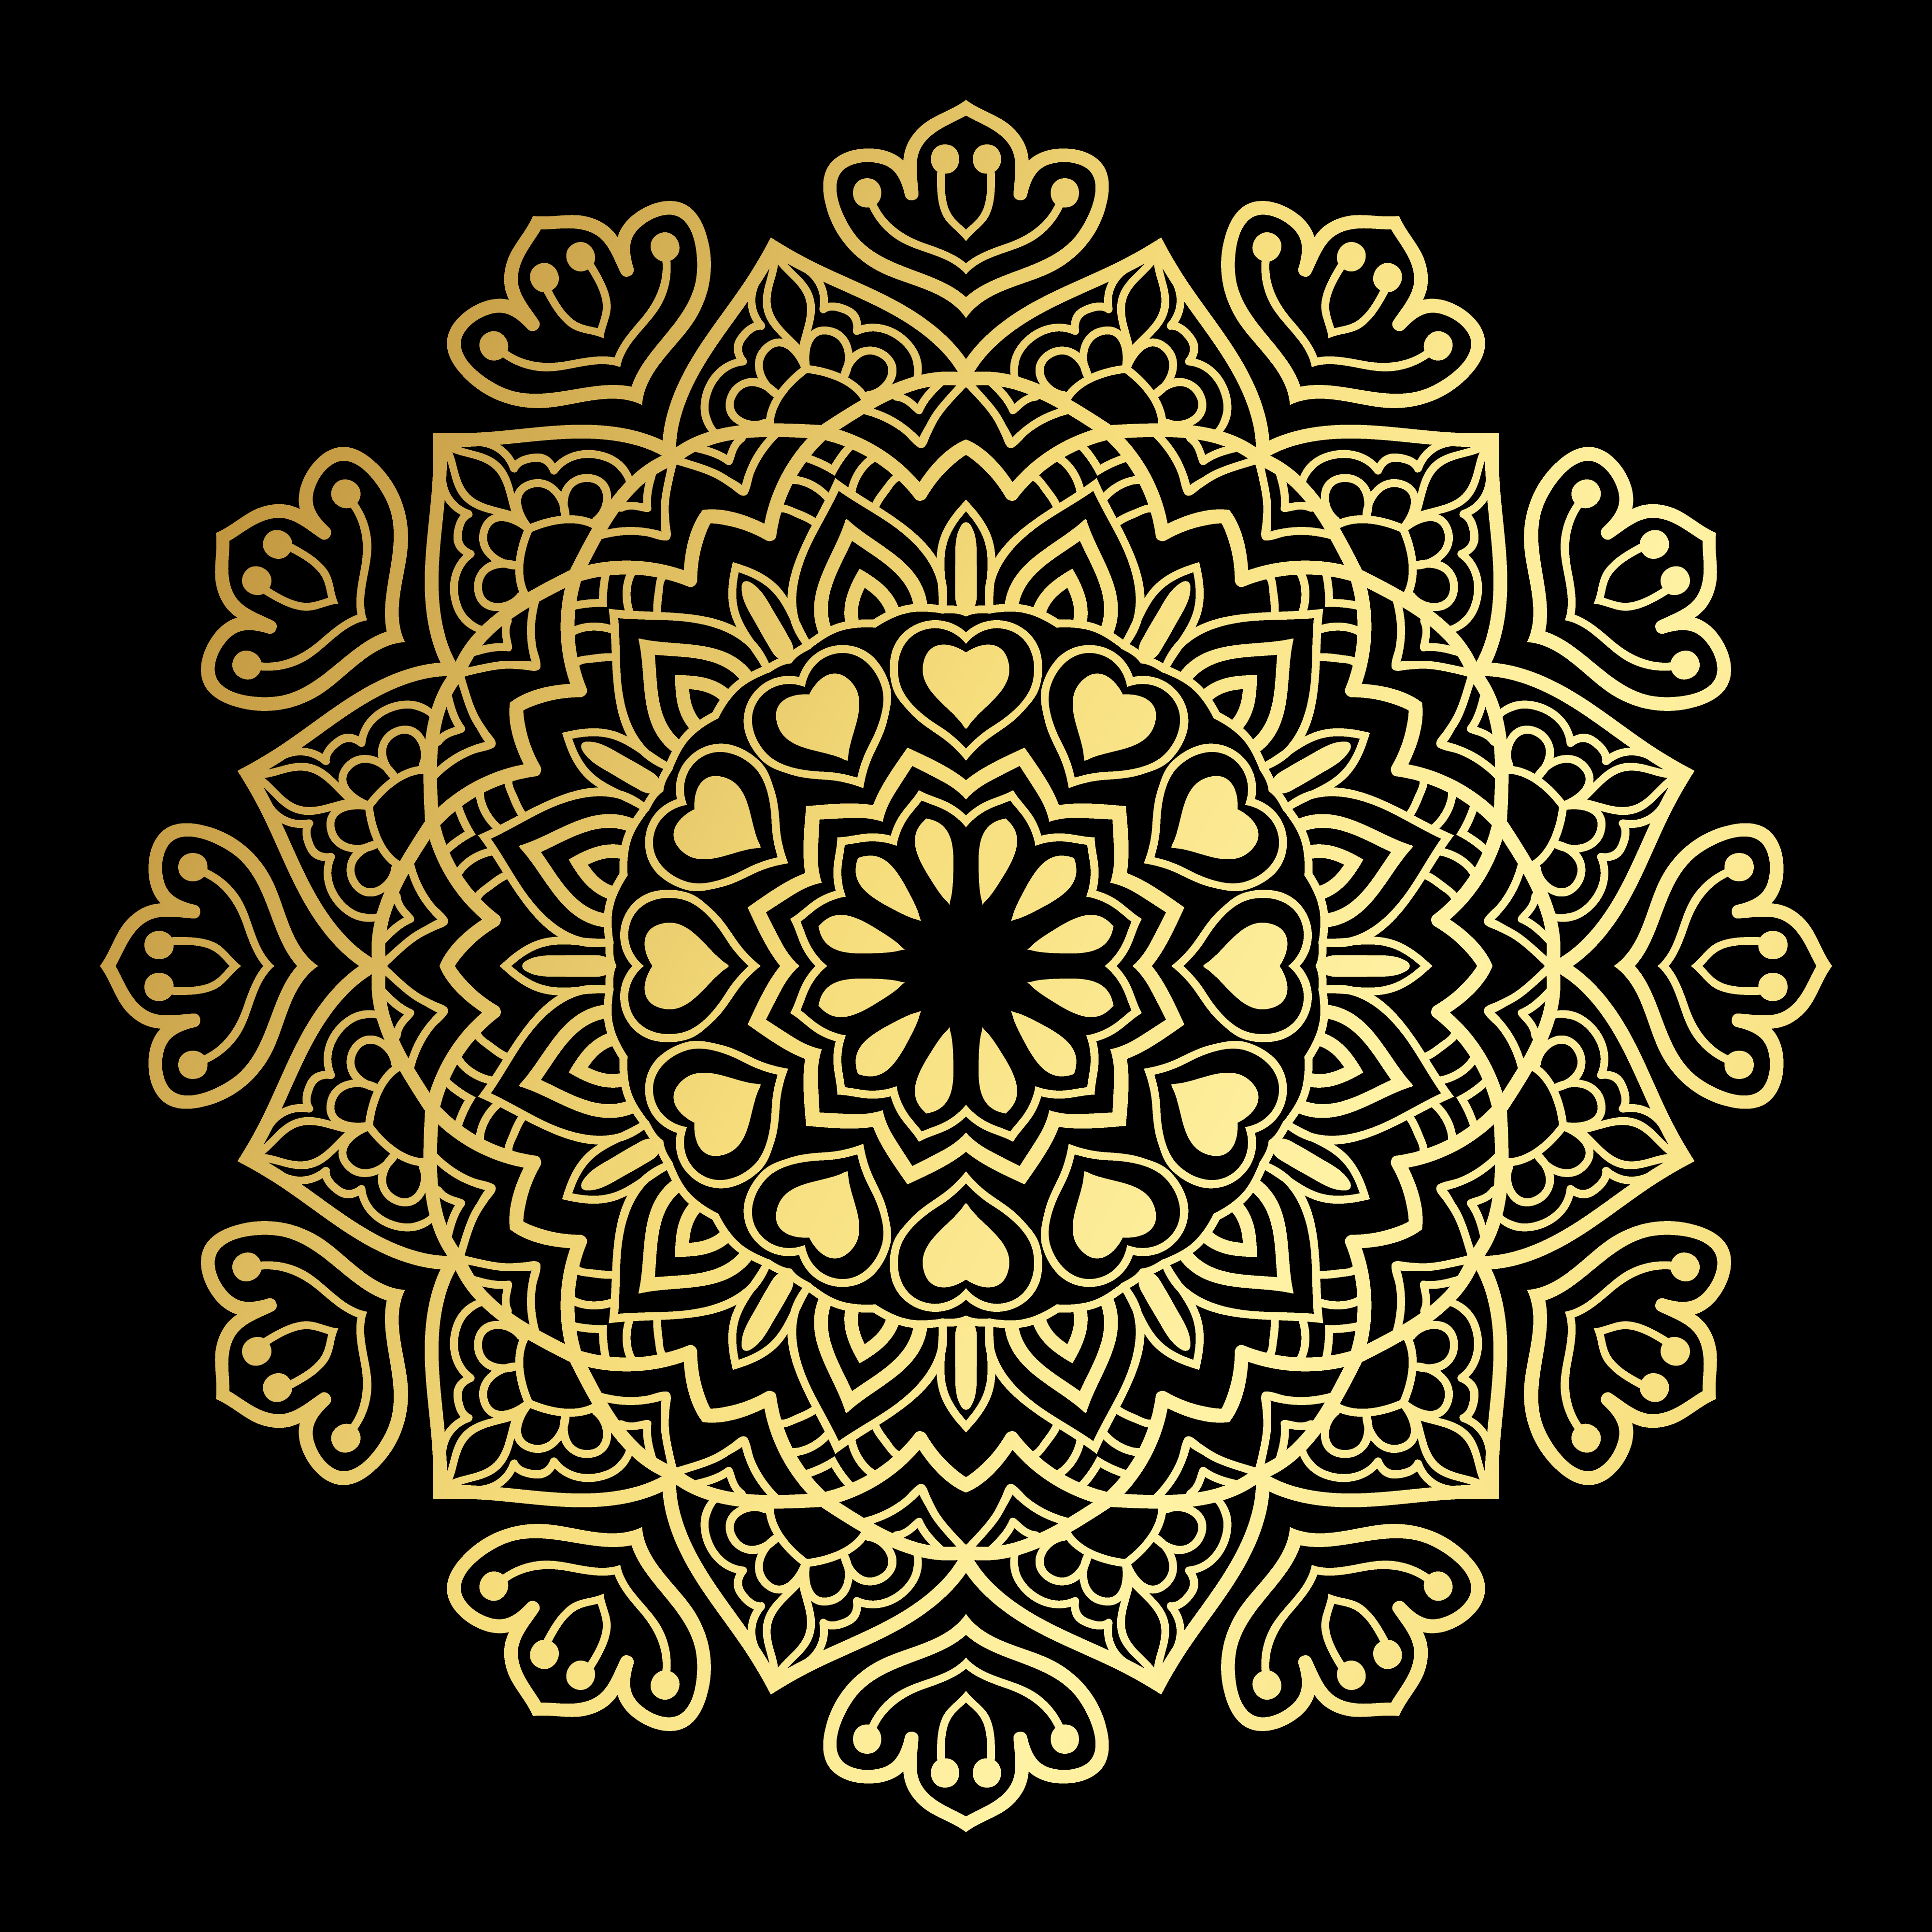 Golden Heart Mandala - Download Free Vectors, Clipart ...